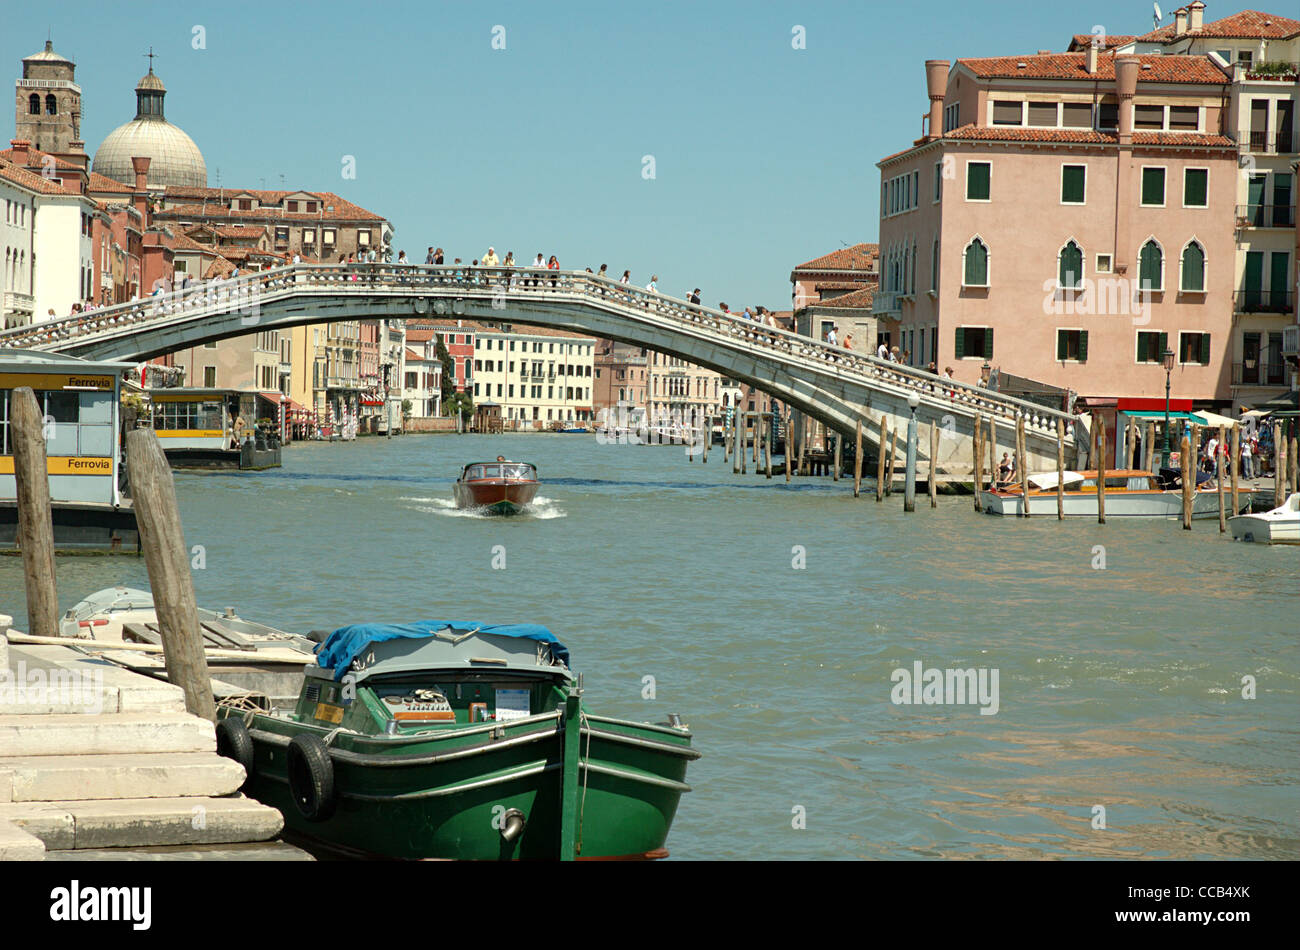 Il Ponte degli Scalzi, Venezia. Ponte degli Scalzi sul Canal Grande di Venezia. Foto Stock